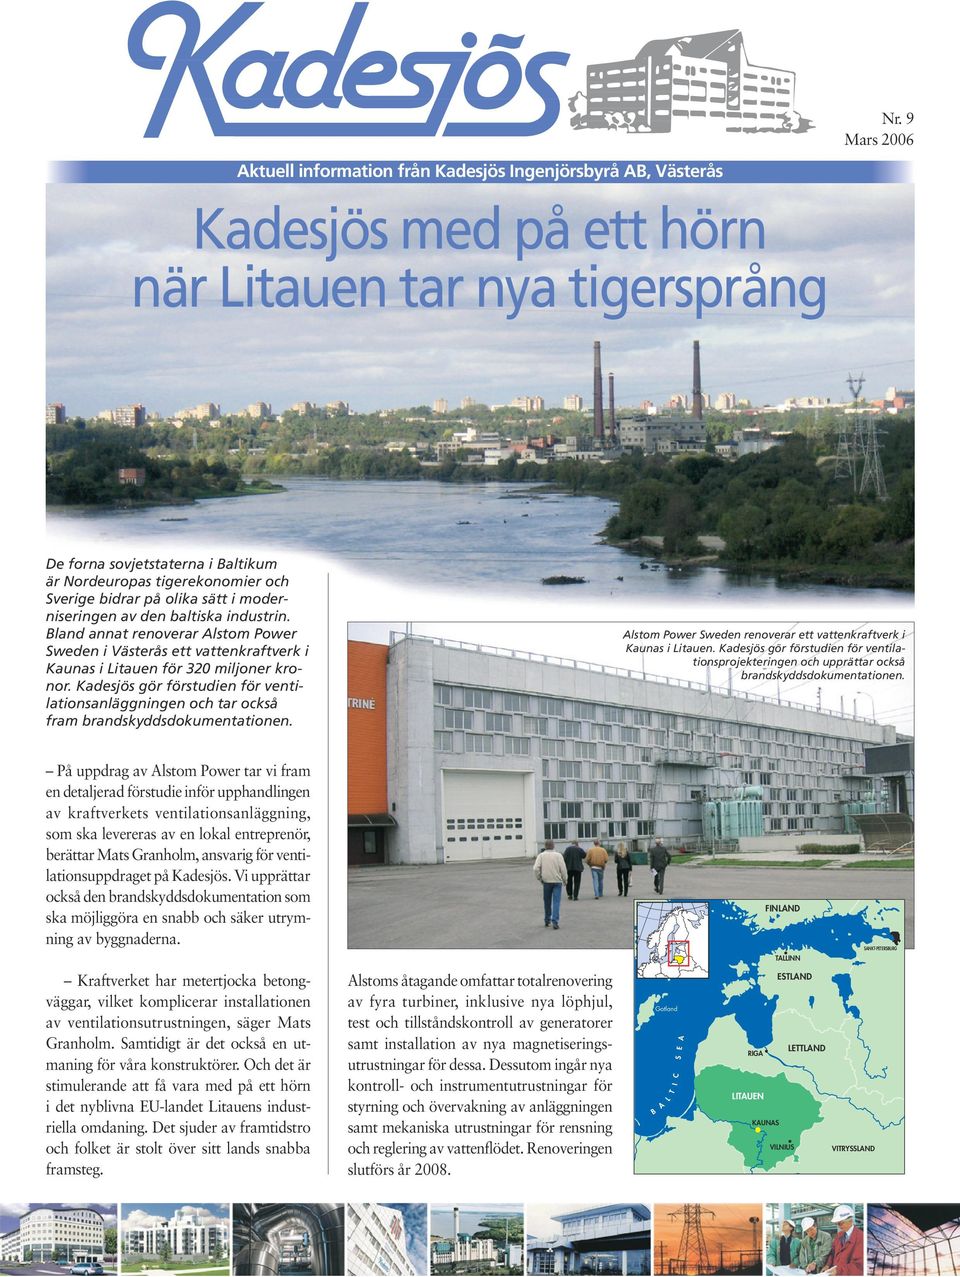 Kadesjös gör förstudien för ventilationsanläggningen och tar också fram brandskyddsdokumentationen. Alstom Power Sweden renoverar ett vattenkraftverk i Kaunas i Litauen.